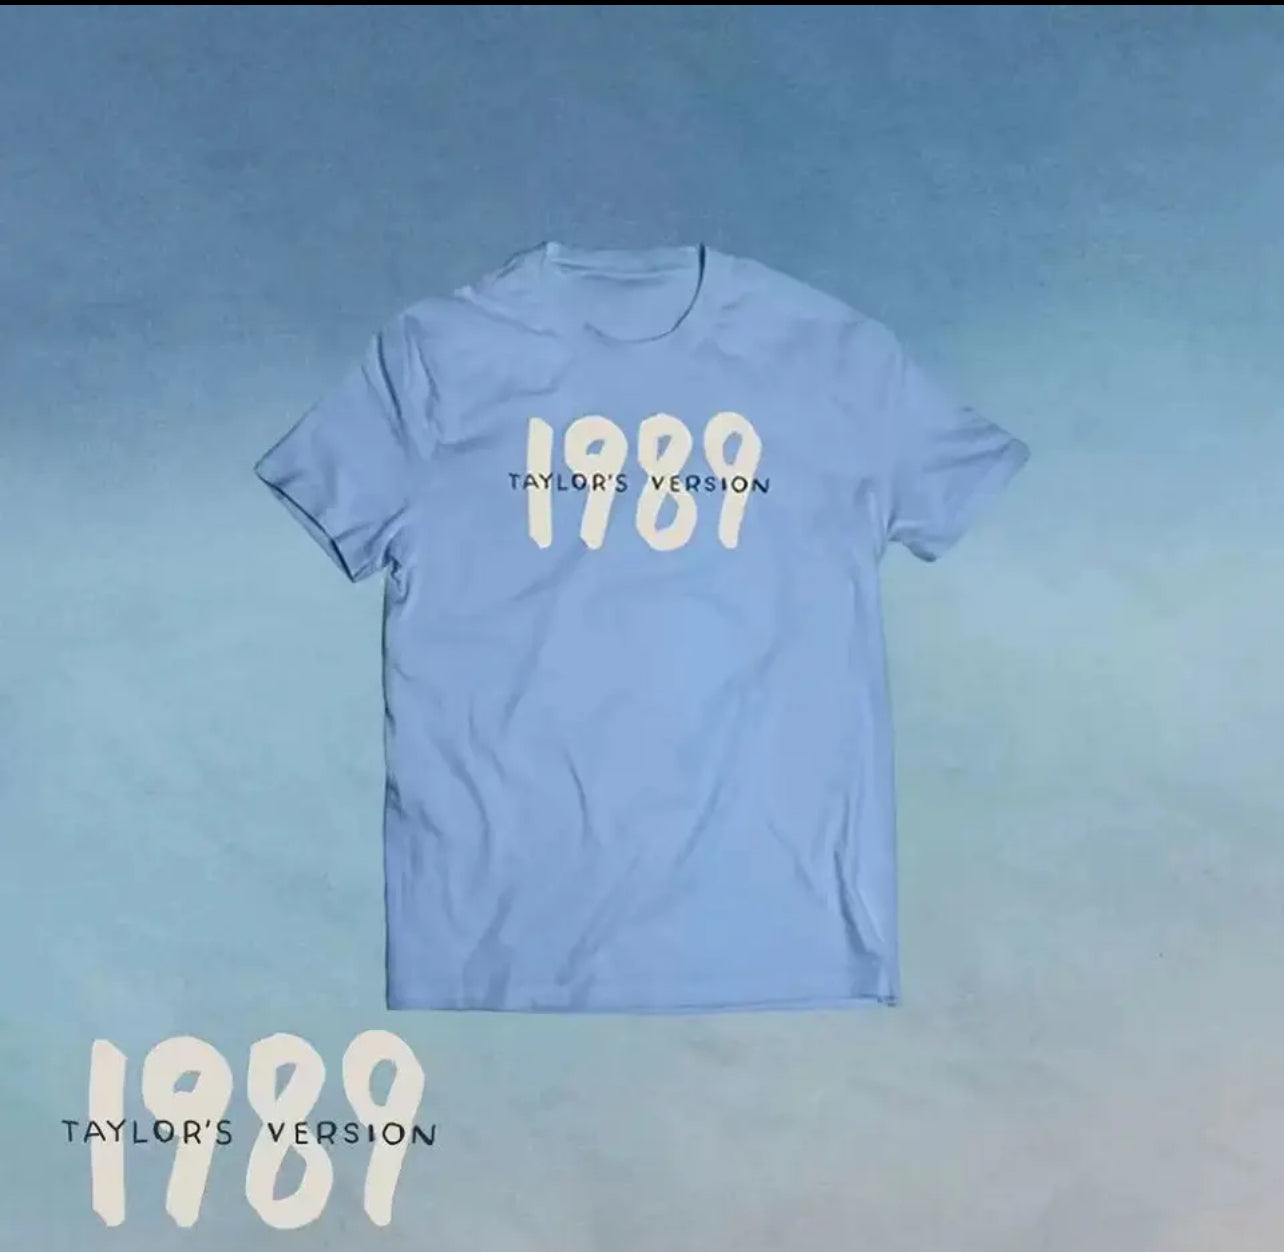 1989 T shirt